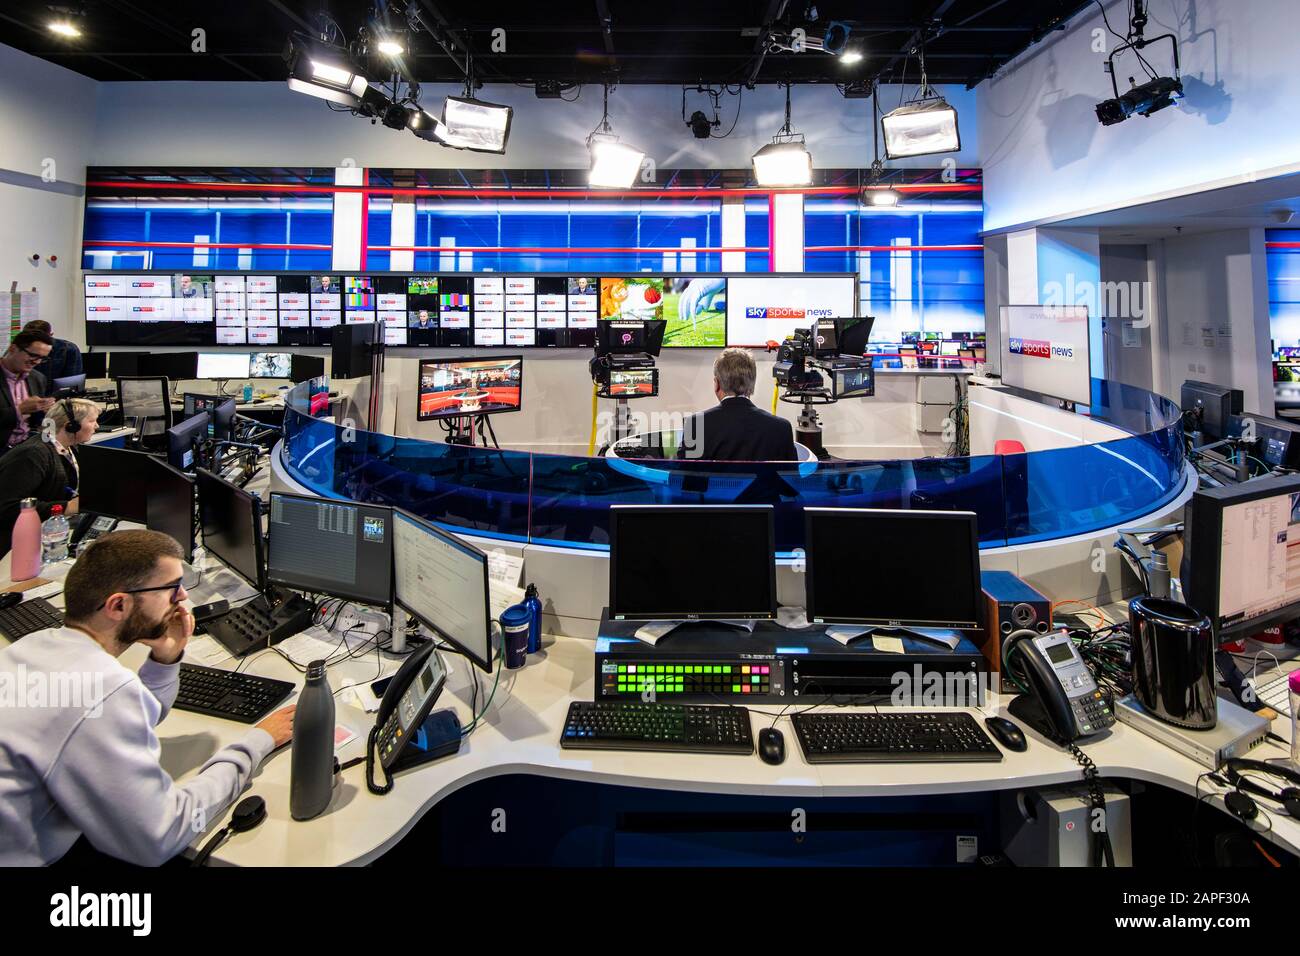 Sky News Studio là một trong những nơi đầu tiên cập nhật những tin tức mới nhất và quan trọng nhất. Hãy xem hình ảnh để khám phá một góc nhìn đặc biệt tại trung tâm tin tức này.